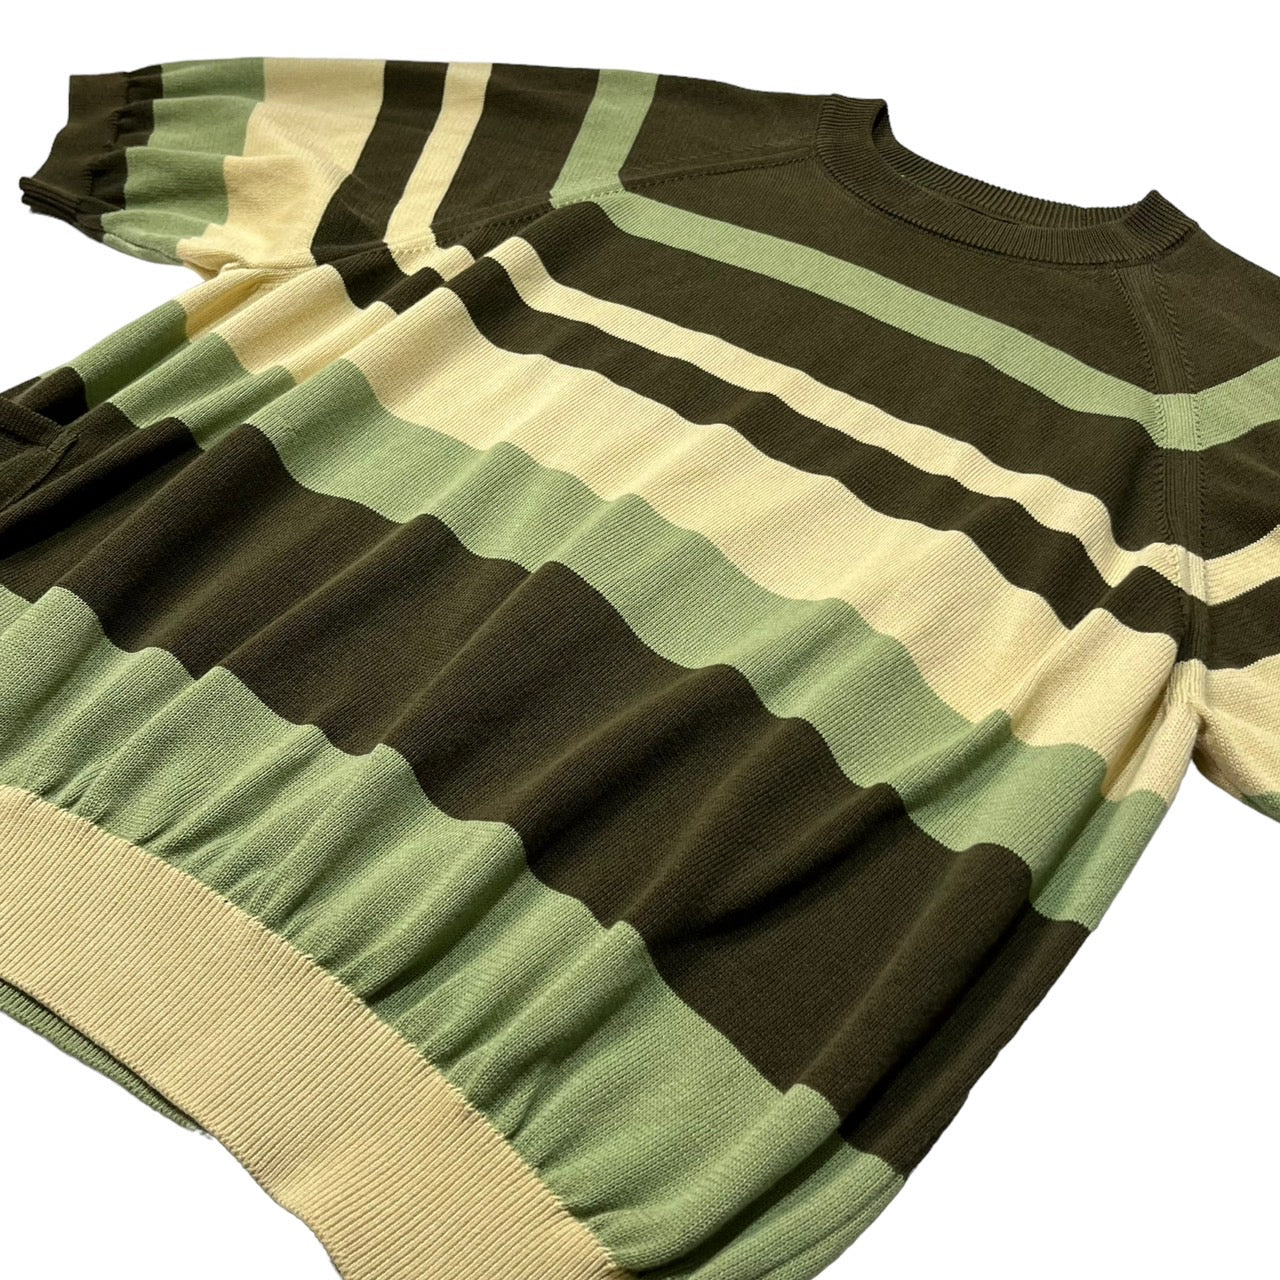 SUNSEA(サンシー) 20SS CLIFs Border Sweater/ボーダーセーター/半袖 20S51 SIZE 2(M) ベージュ×カーキ×ライトグリーン